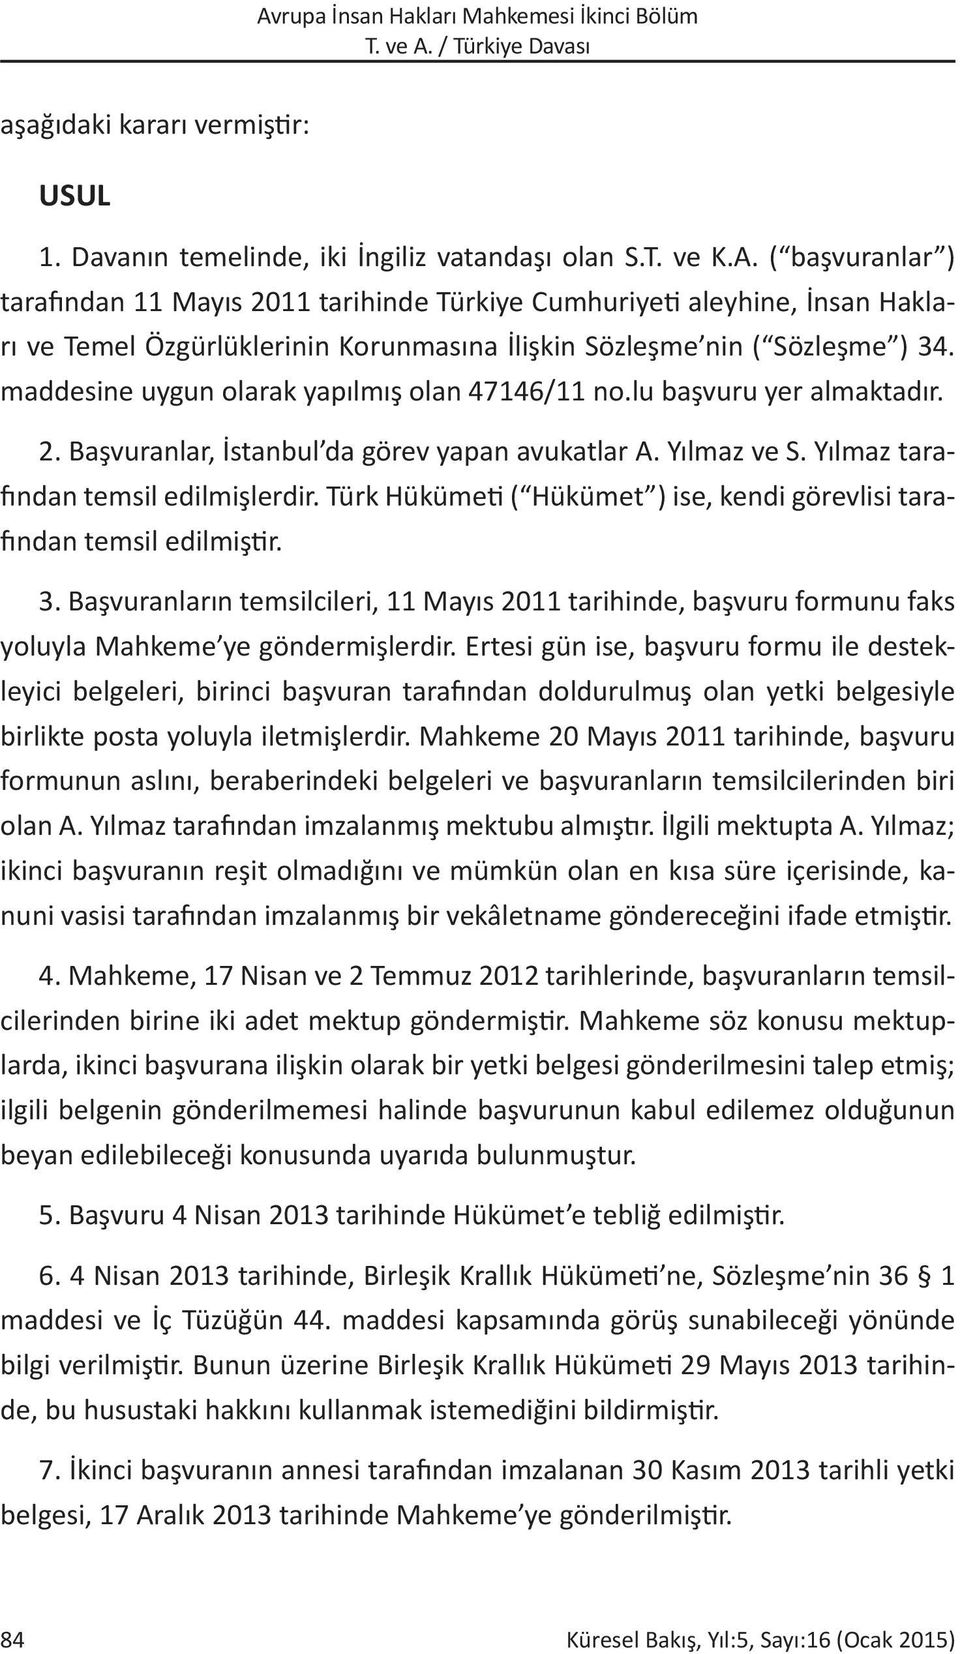 maddesine uygun olarak yapılmış olan 47146/11 no.lu başvuru yer almaktadır. 2. Başvuranlar, İstanbul da görev yapan avukatlar A. Yılmaz ve S. Yılmaz tarafından temsil edilmişlerdir.